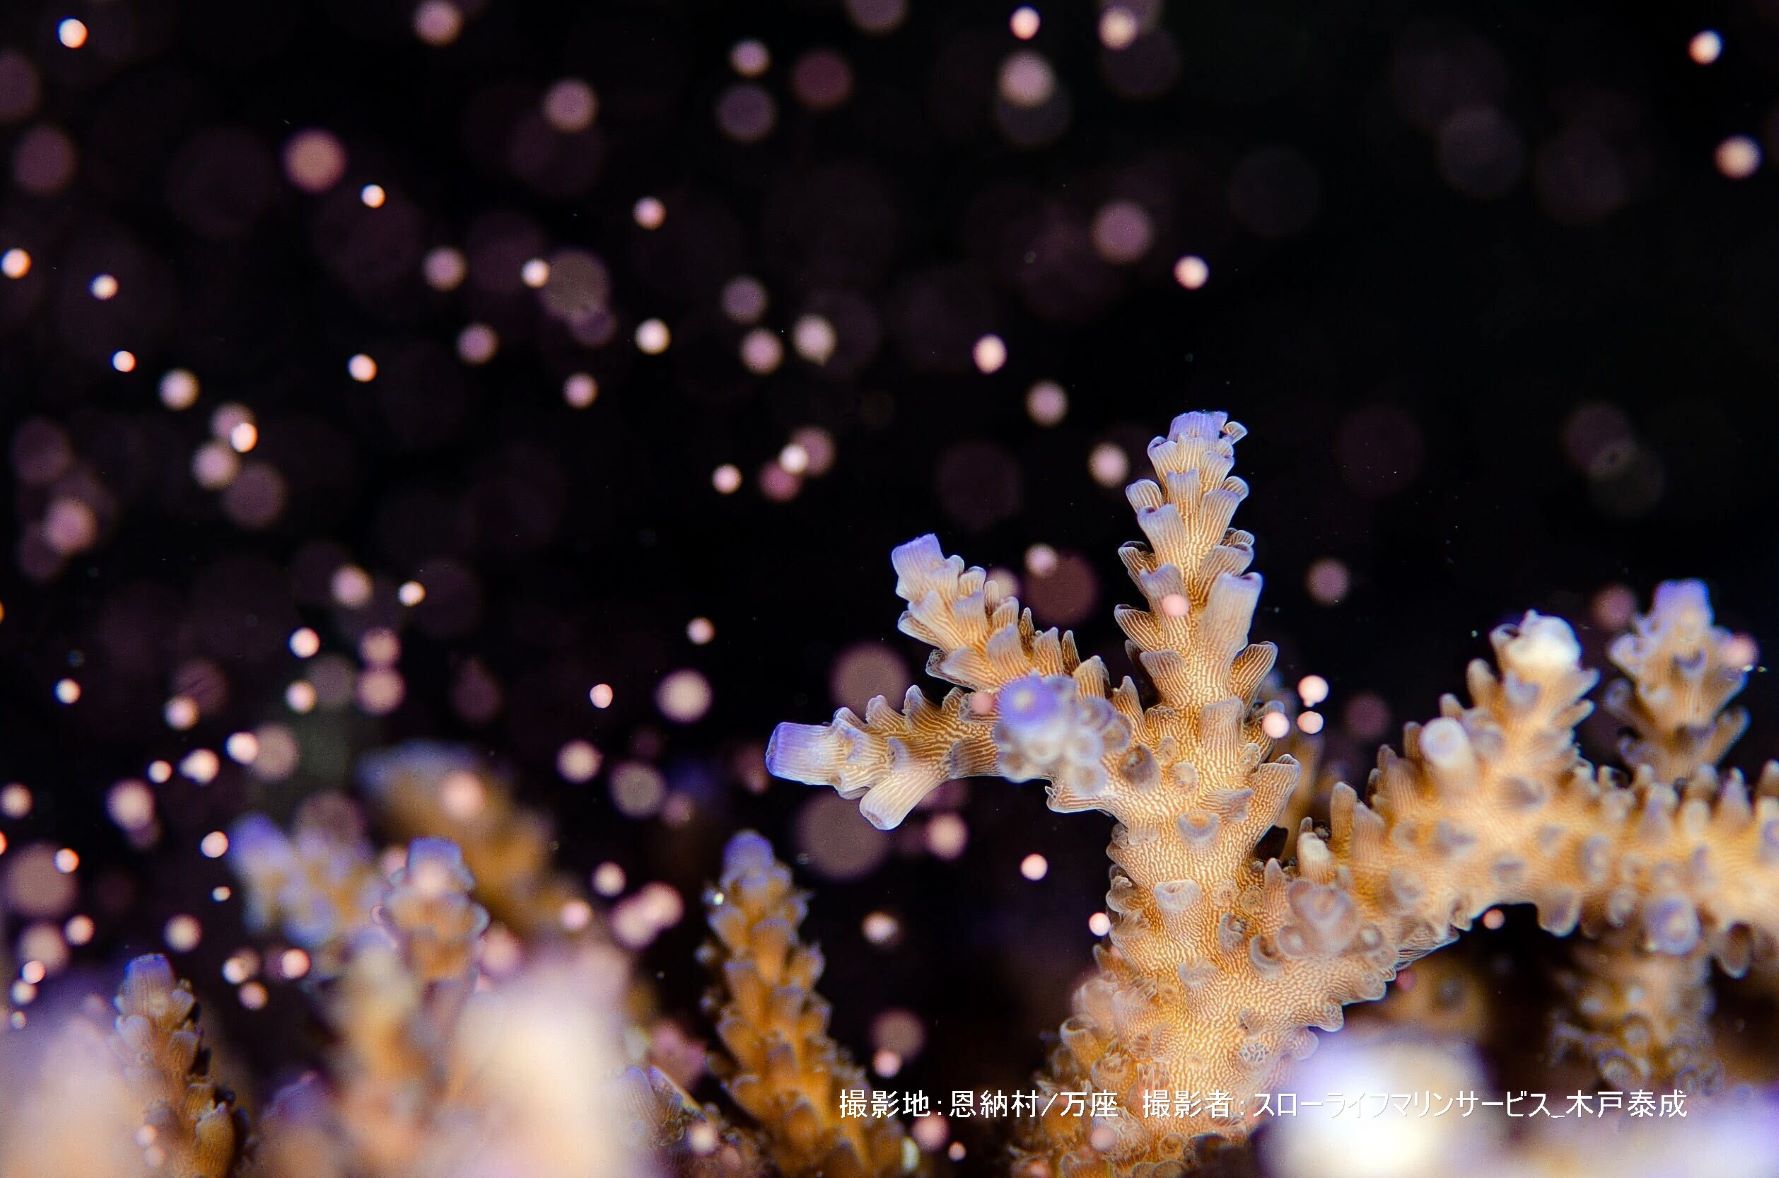 バンドルと呼ばれる、サンゴの卵がひとつずつ海中に放たれていく様子は幻想的です。